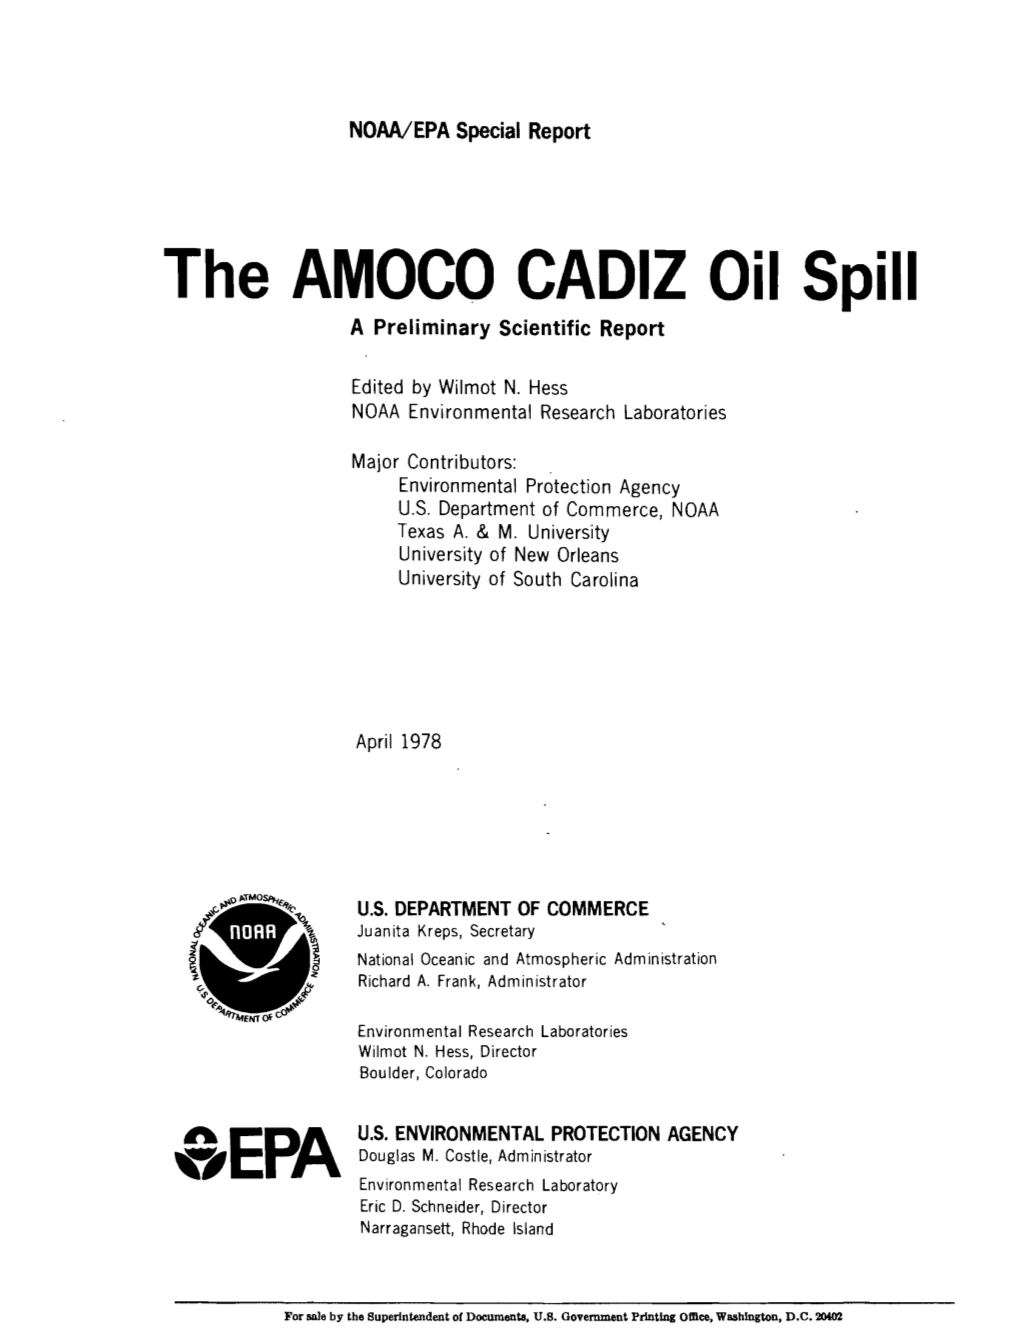 The AMOCO CADIZ Oil Spill a Preliminary Scientific Report